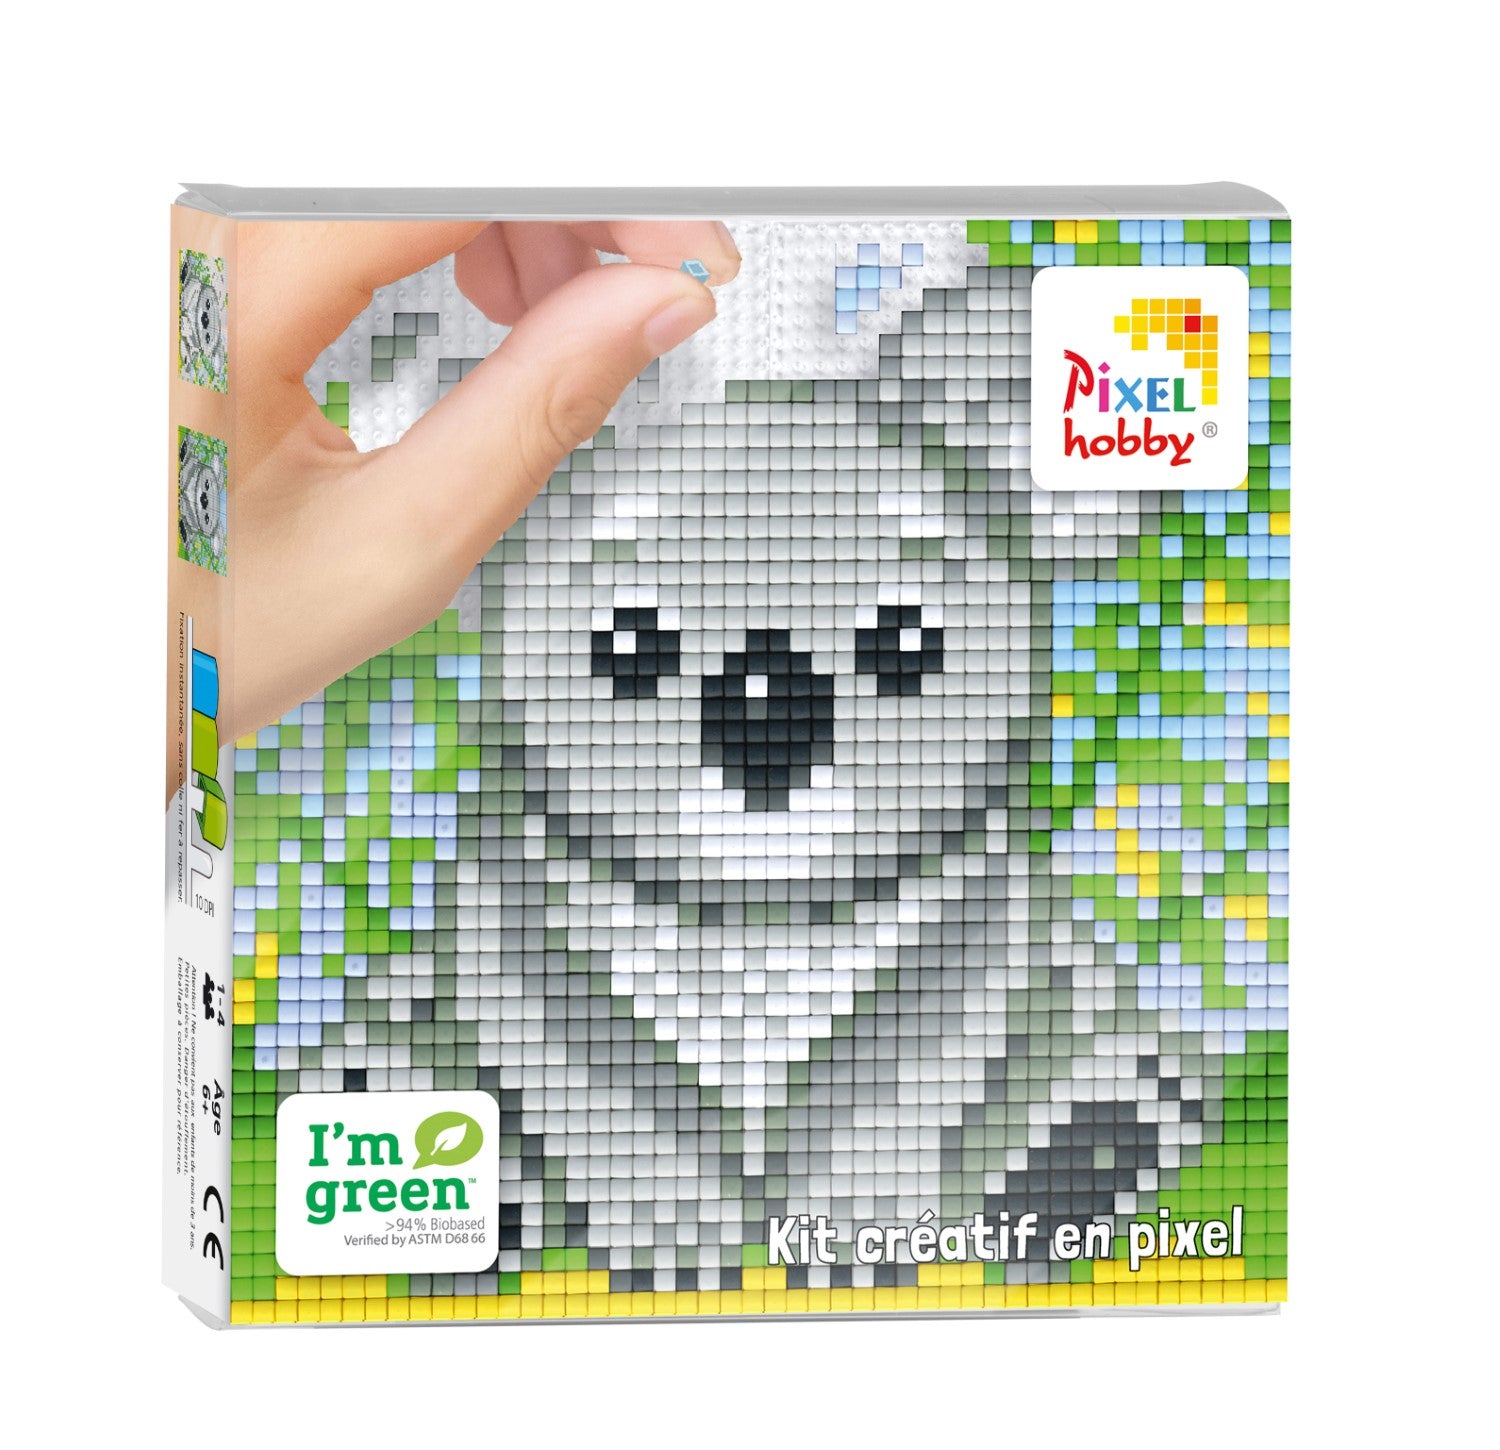 Pixelhobby Classic Pixel Set - Koala